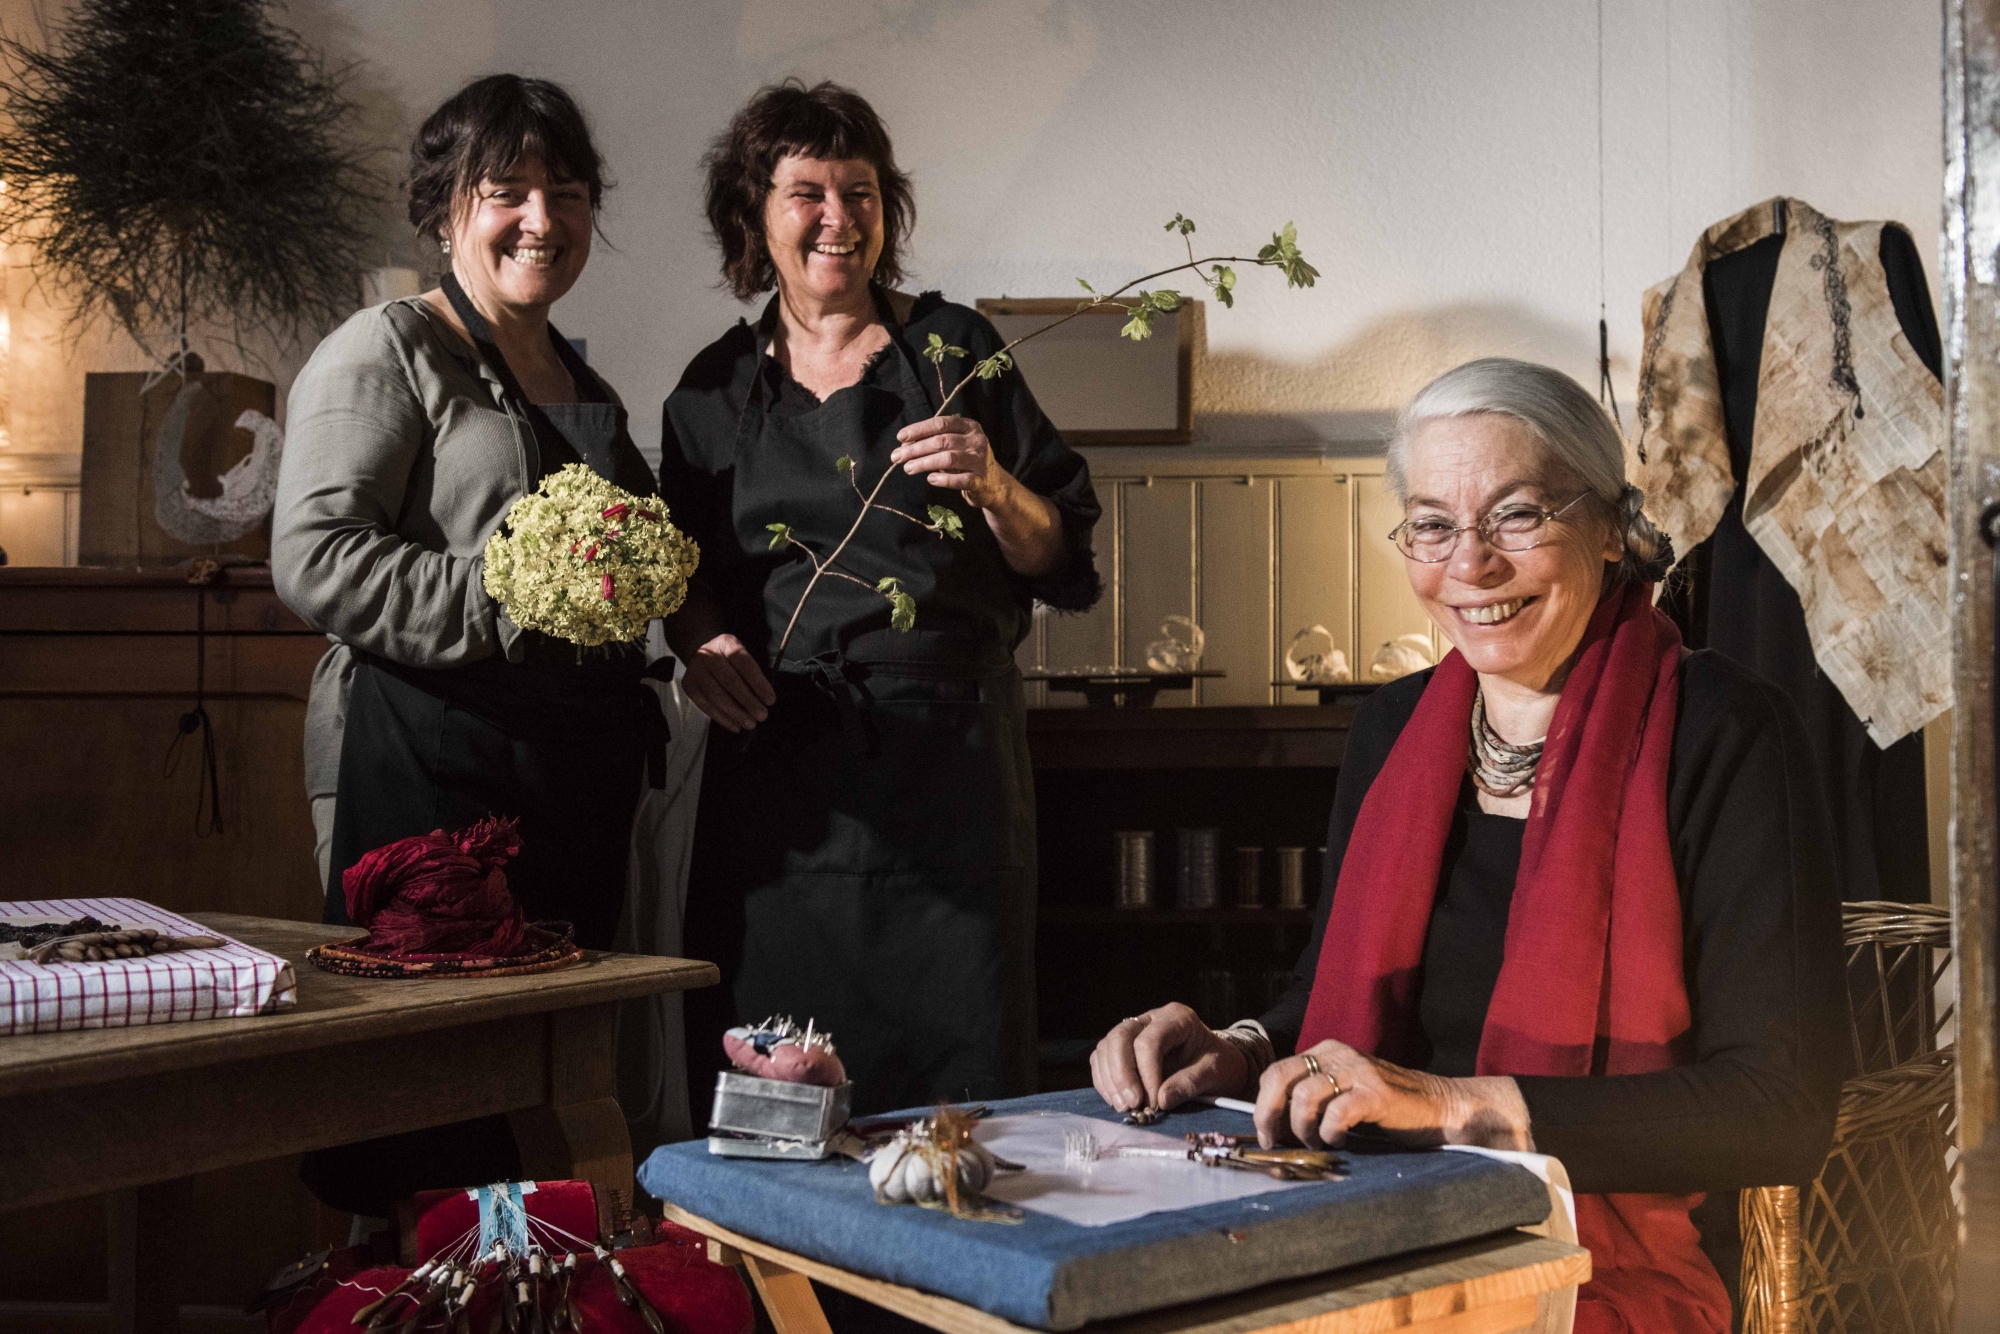 La dentellière Catherine Lambert a rejoint l’atelier floral de Chantal Morand et Carine Crettenand à Martigny pour la première édition des Journées européennes de métier d’art en Valais le week-end dernier. Leurs créations ont séduit le public.